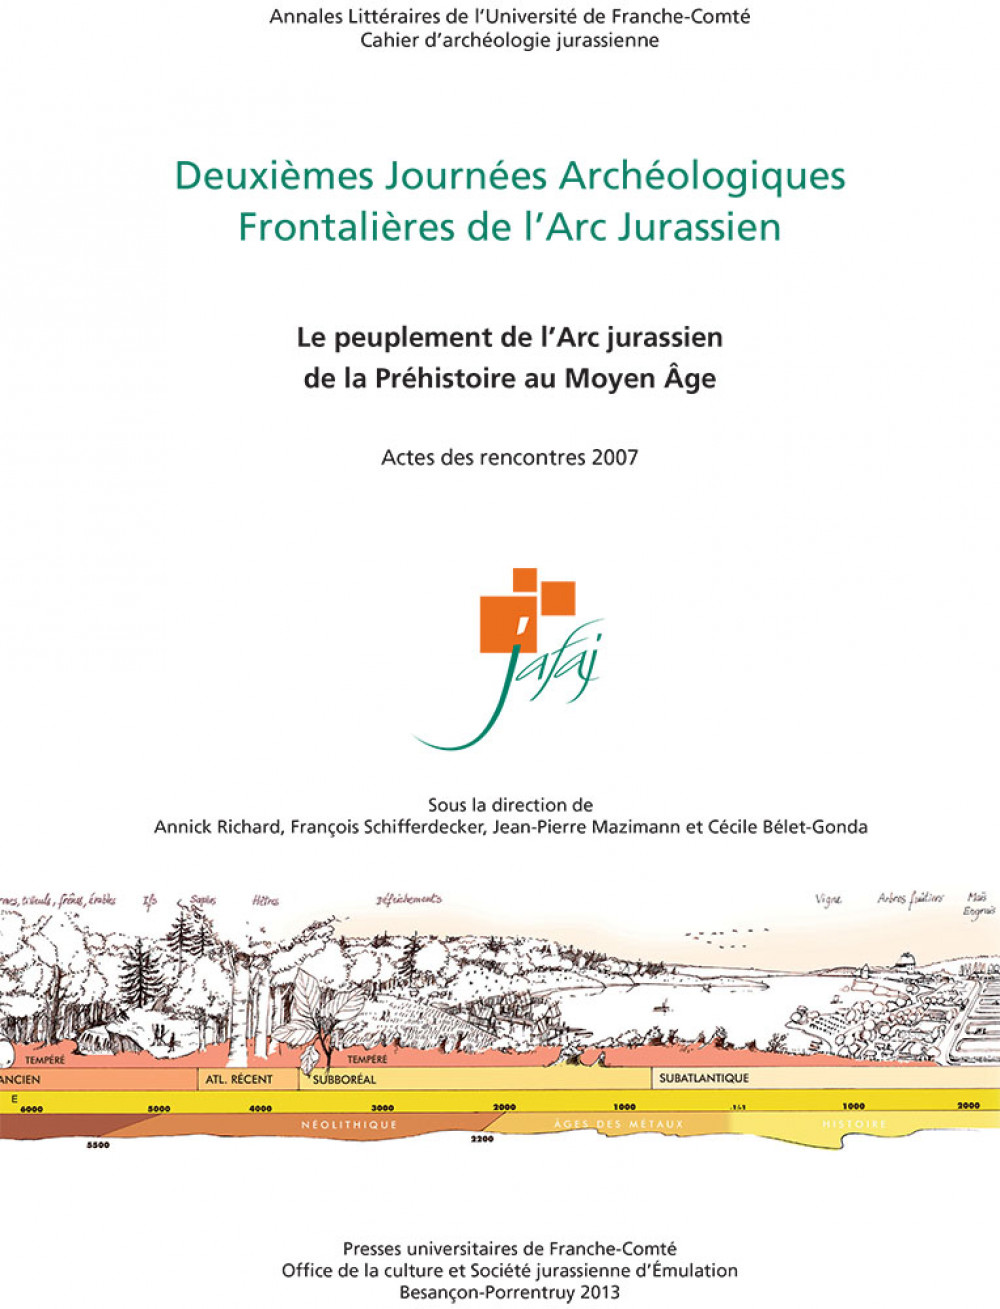 Deuxièmes Journées Archéologiques Frontalières de l'Arc Jurassien